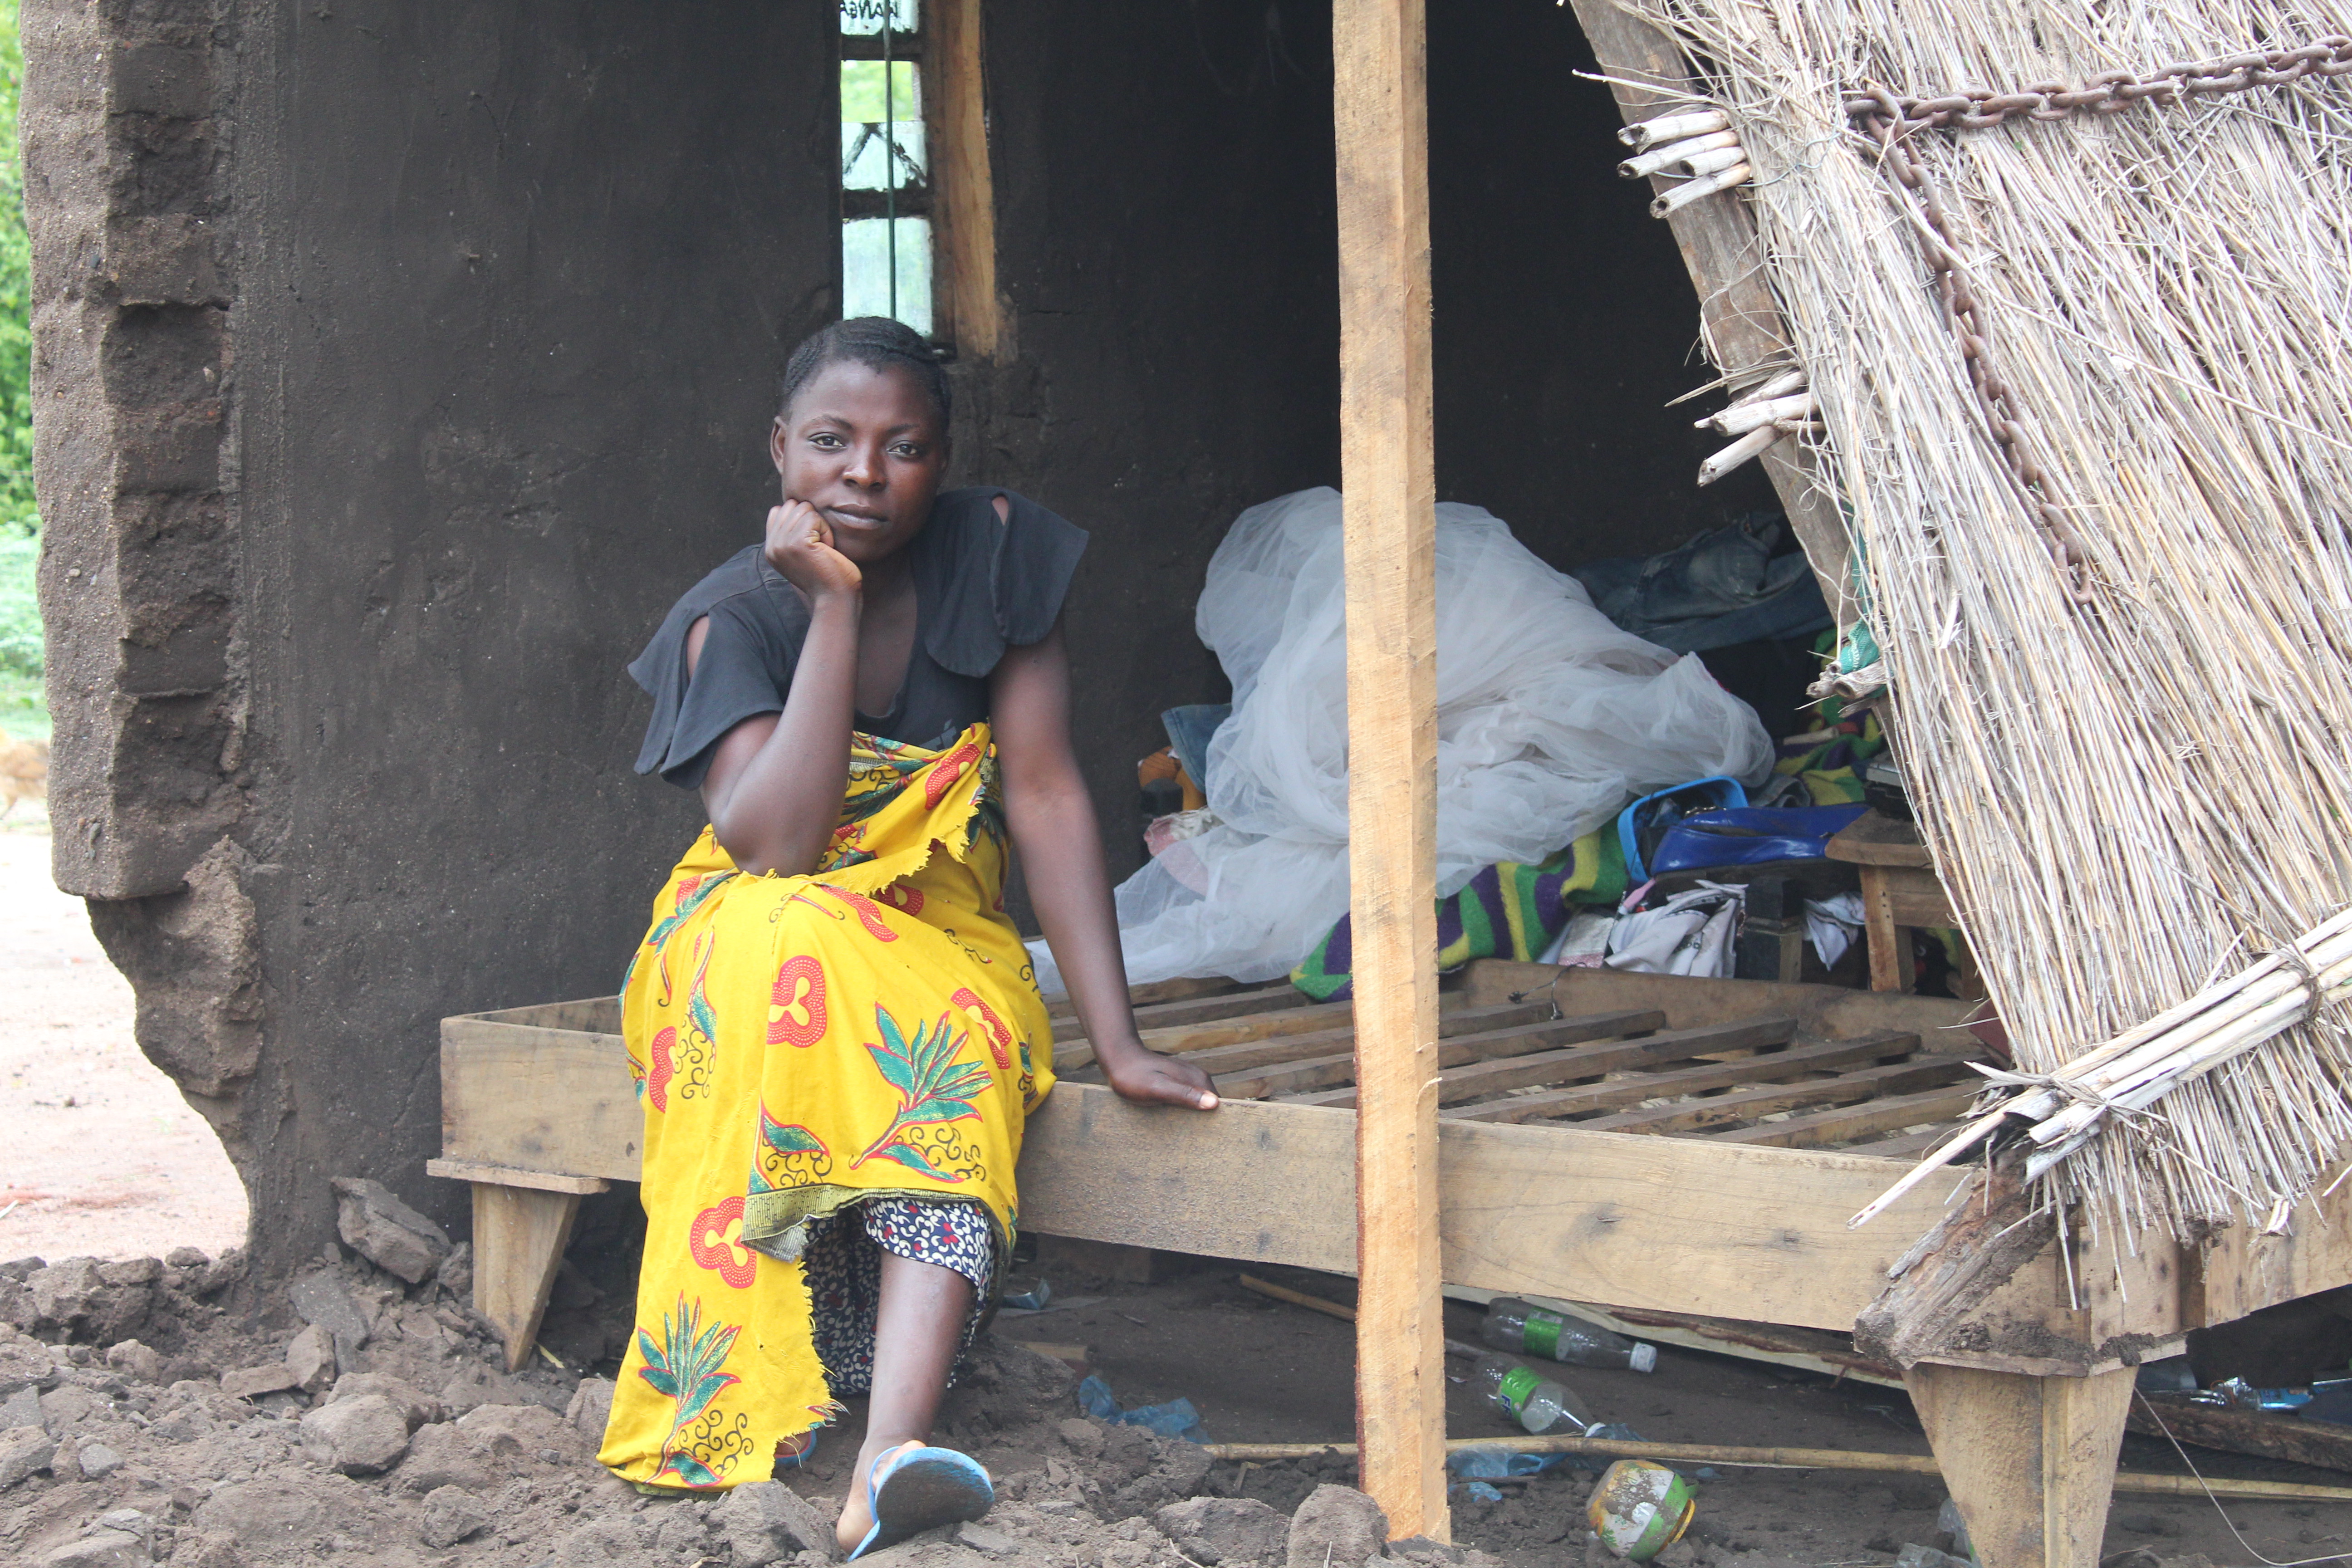 Jenta med kort hår mørk overdel og gult skjørt sitter i et ødelagt hus i Malawi. Foto: SOS-barnebyer Malawi